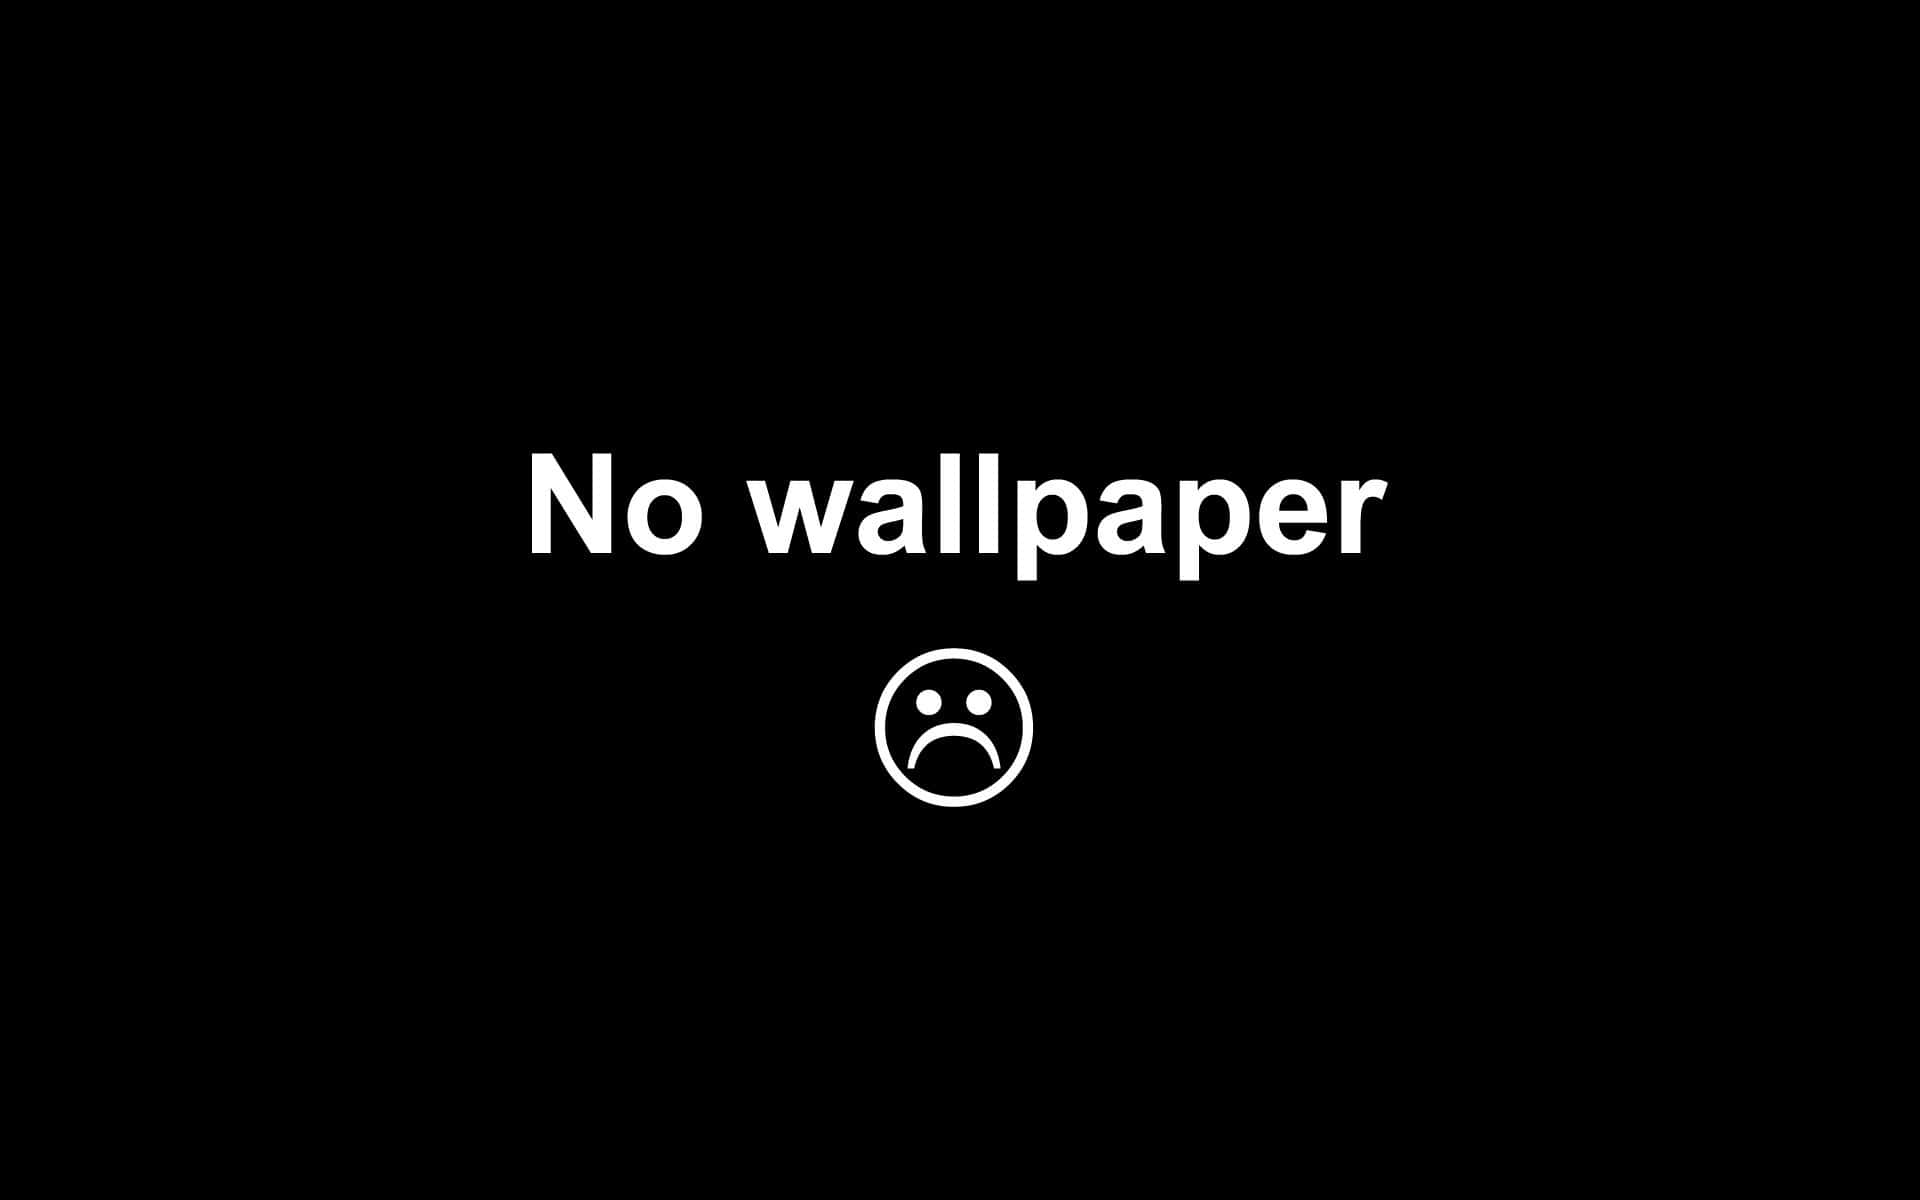 No Wallpaper - Wallpapers - No Wallpaper